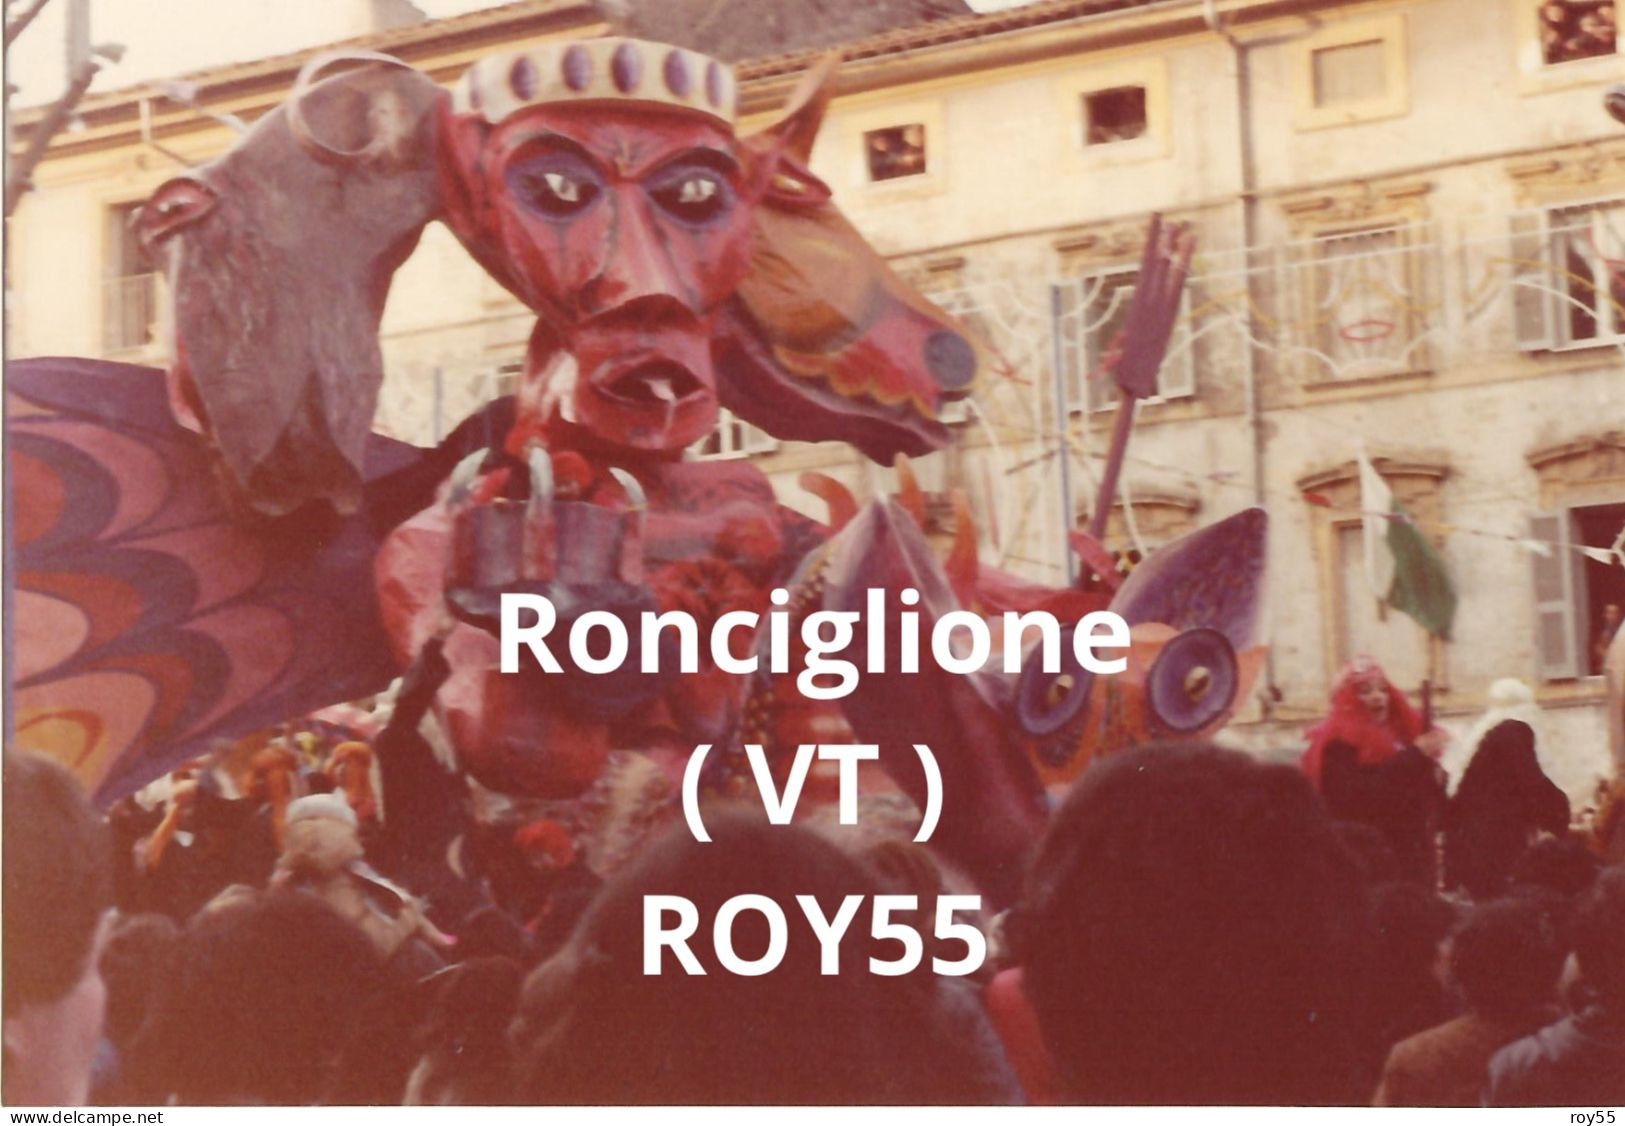 Lazio Viterbo Ronciglione Carnevale 1981 Carro Allegorico (fotografia) - Carnaval